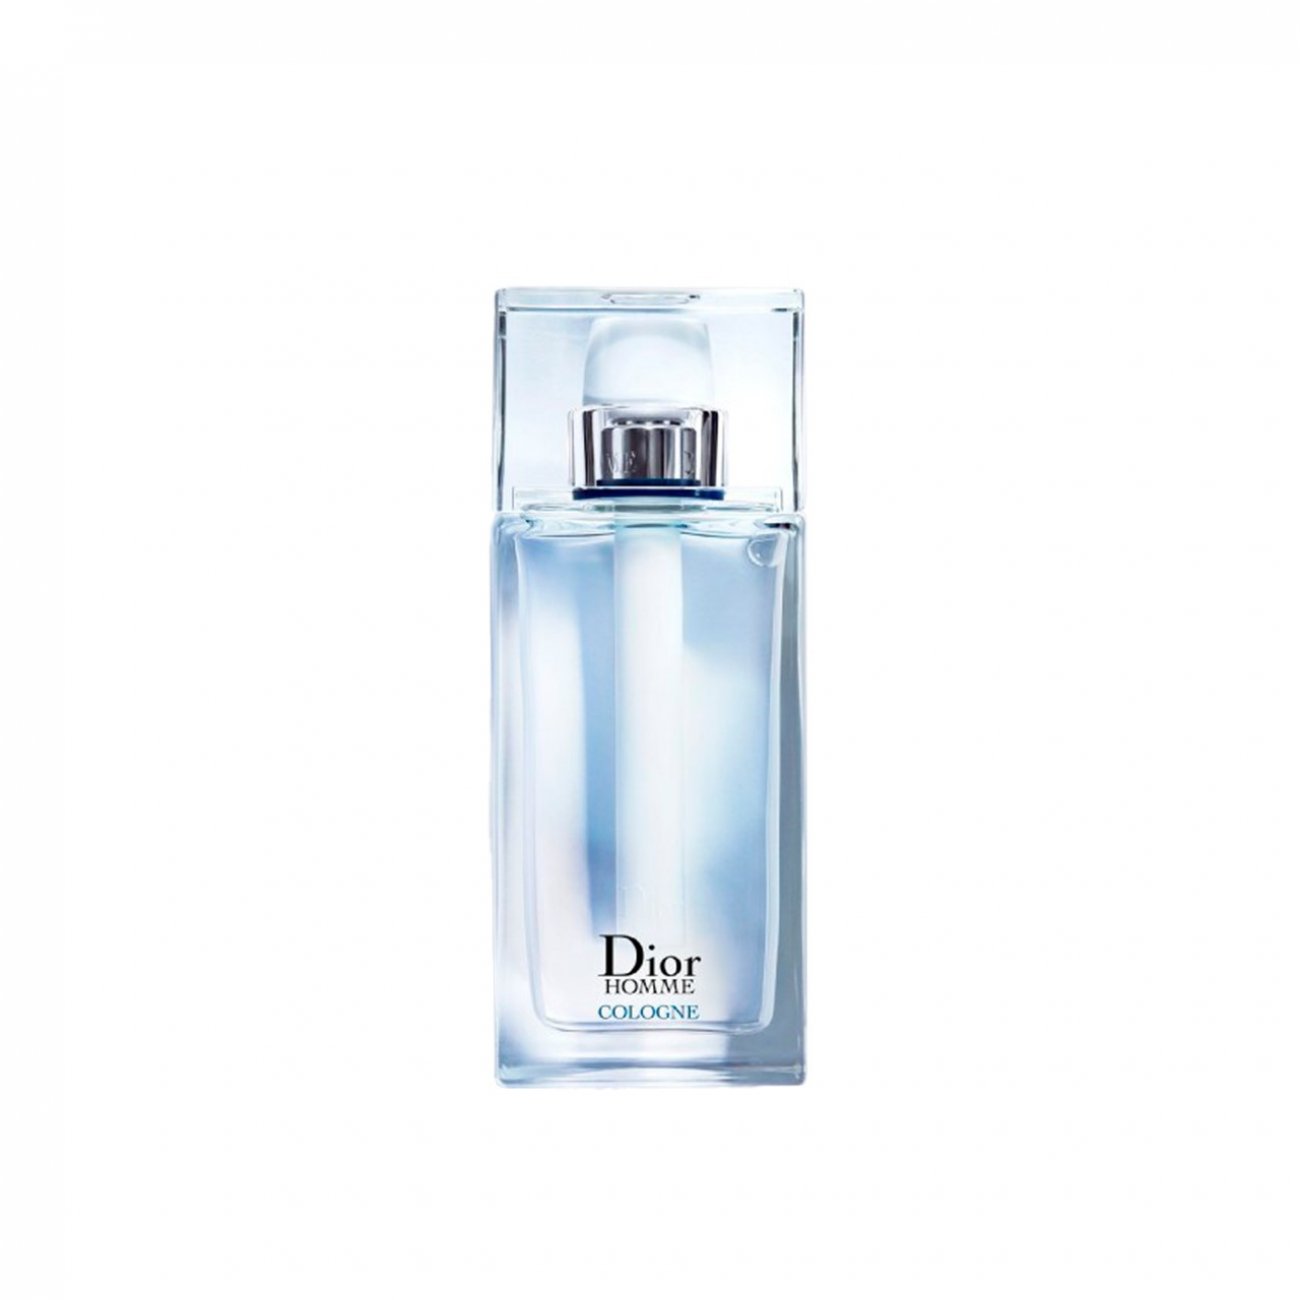 Dior Homme Cologne for Men